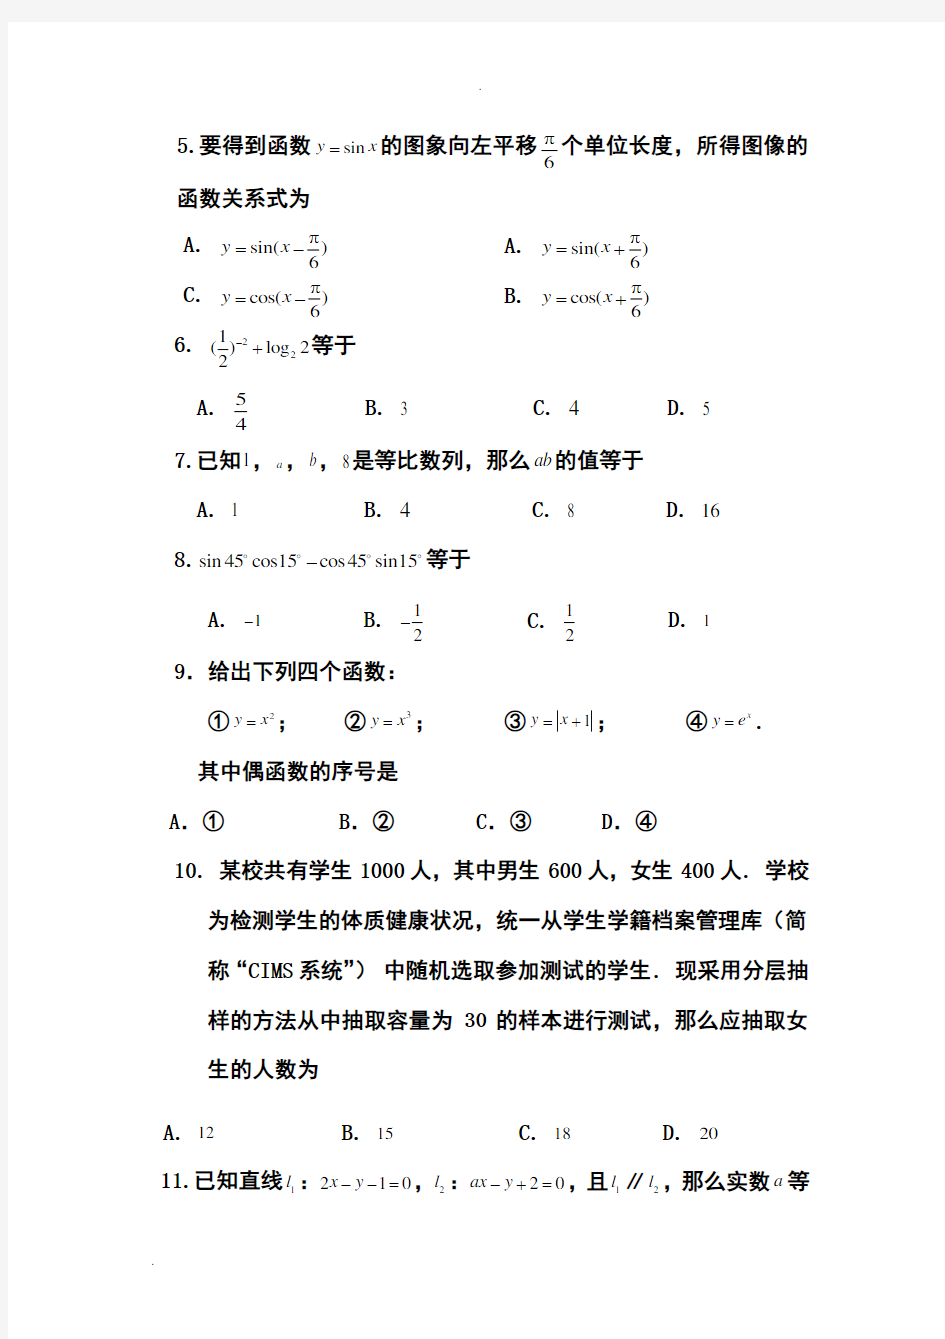 2019年北京普通高中会考数学真题